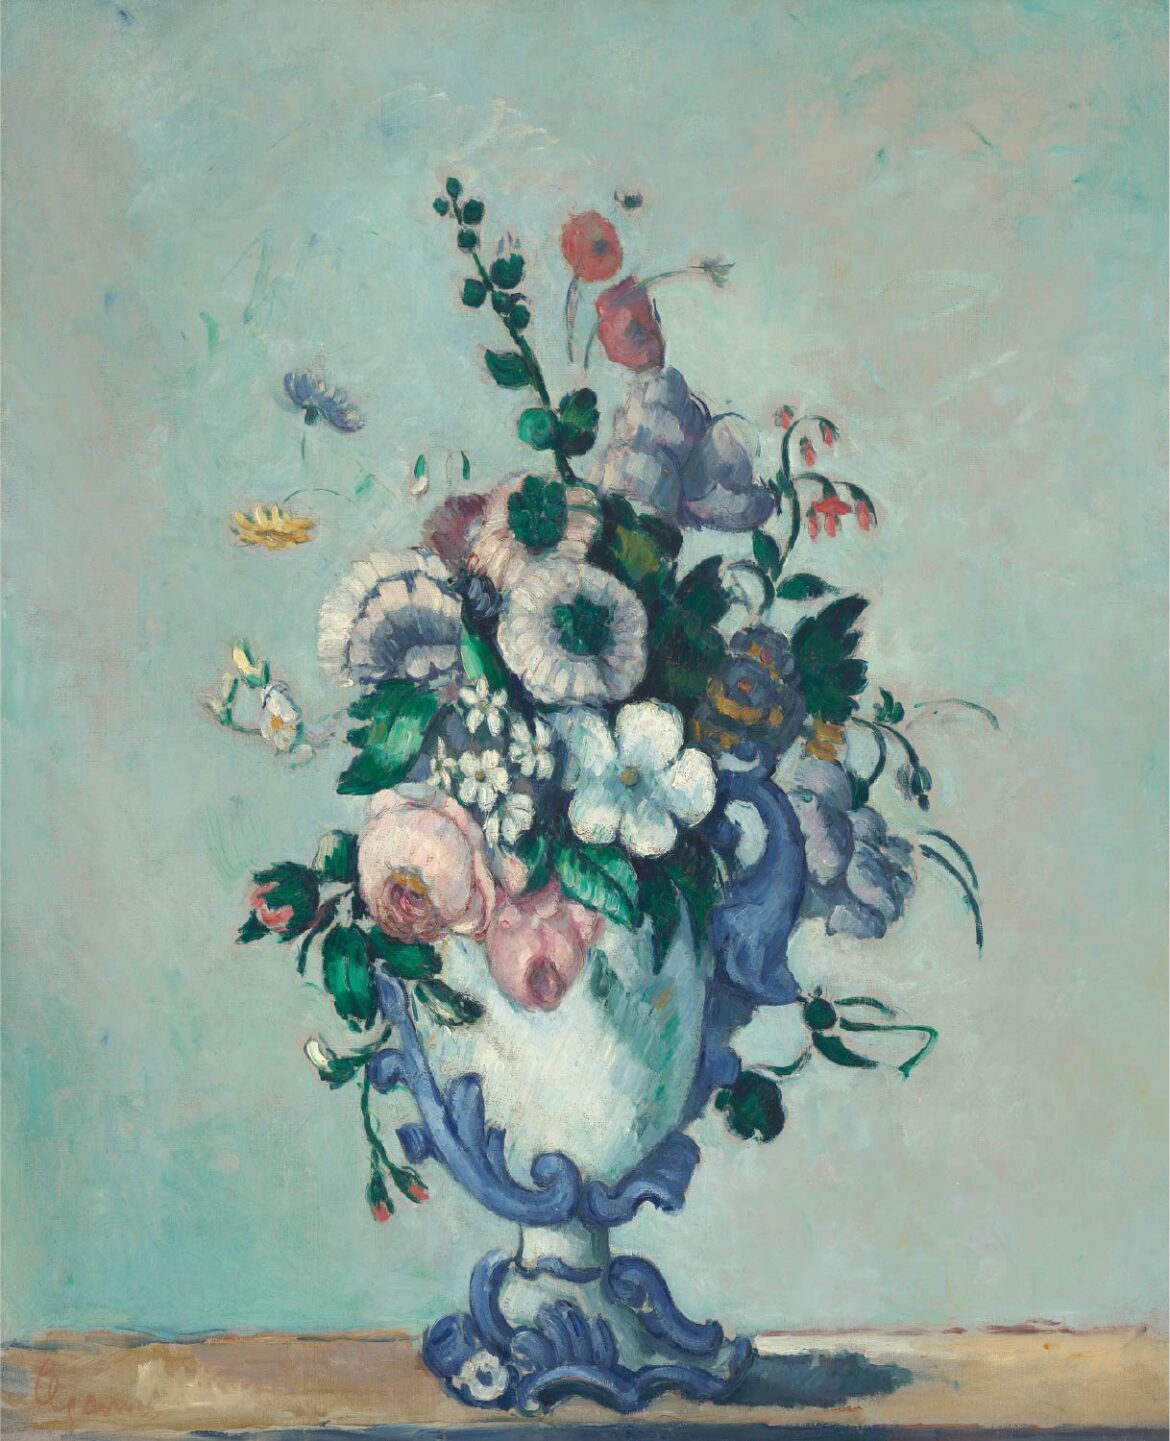 【無料壁紙】ポール・セザンヌ「ロココ調の花瓶の花 (1876頃)」 / Paul Cézanne_Flowers in a Rococo Vase (ca.1876)